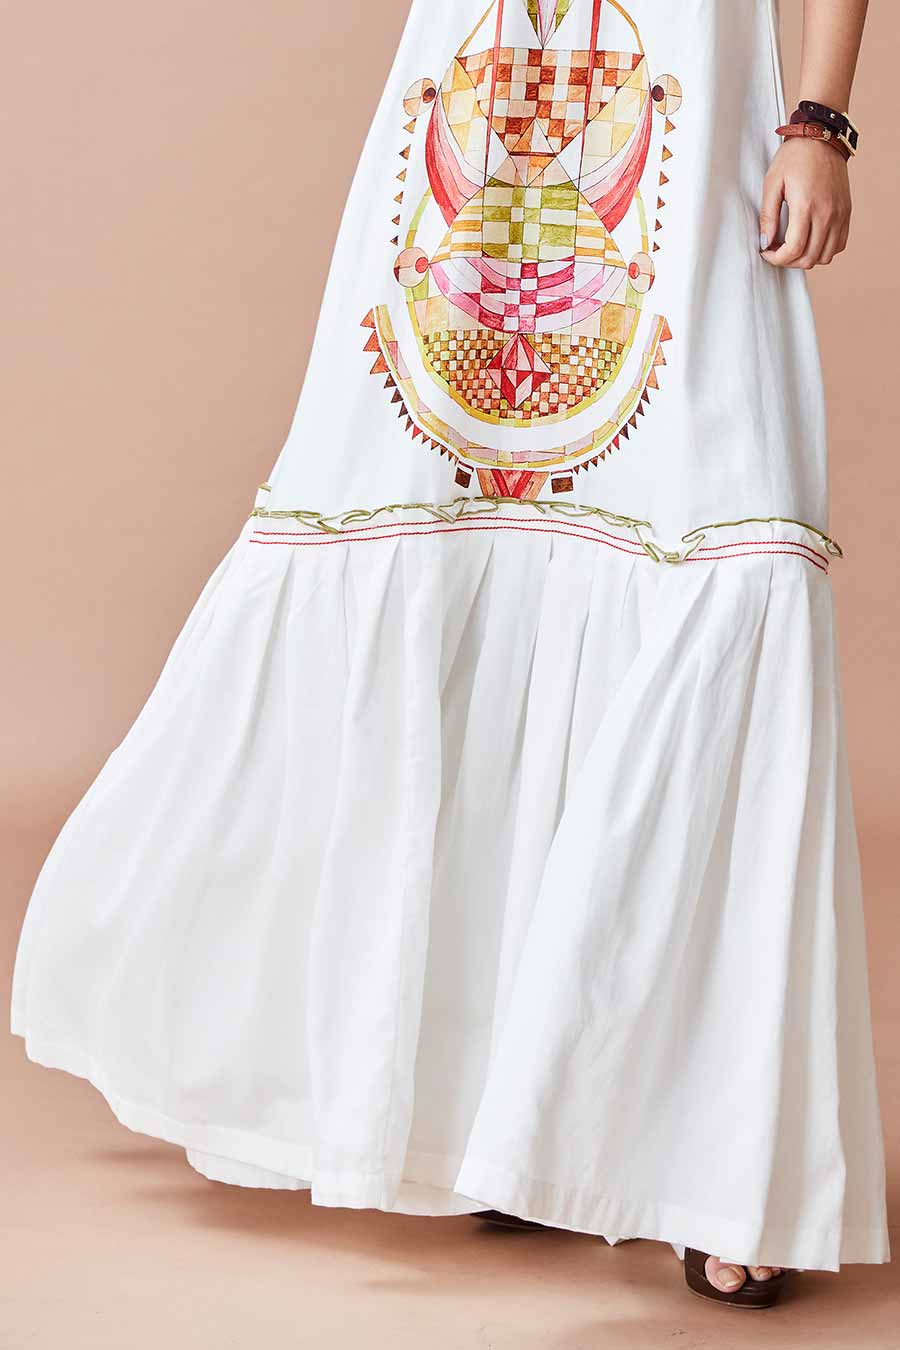 Aska Triad Printed White Maxi Dress